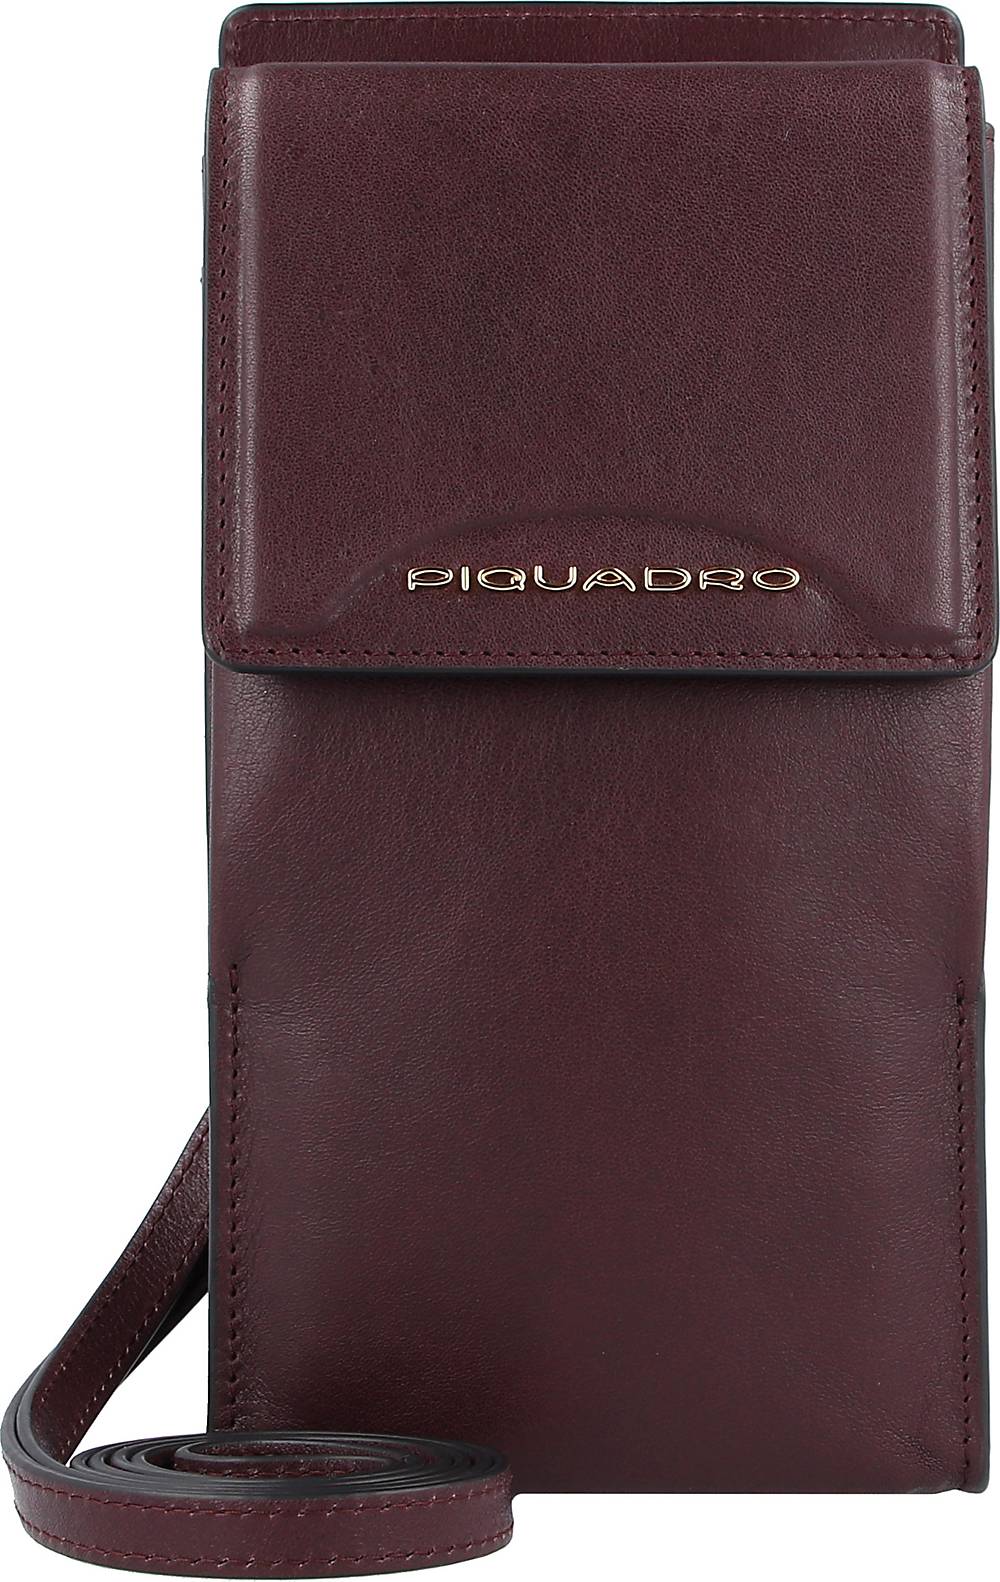 Piquadro, Gea Handytasche Leder 10,5 Cm in rot, Handyhüllen & Zubehör für Damen